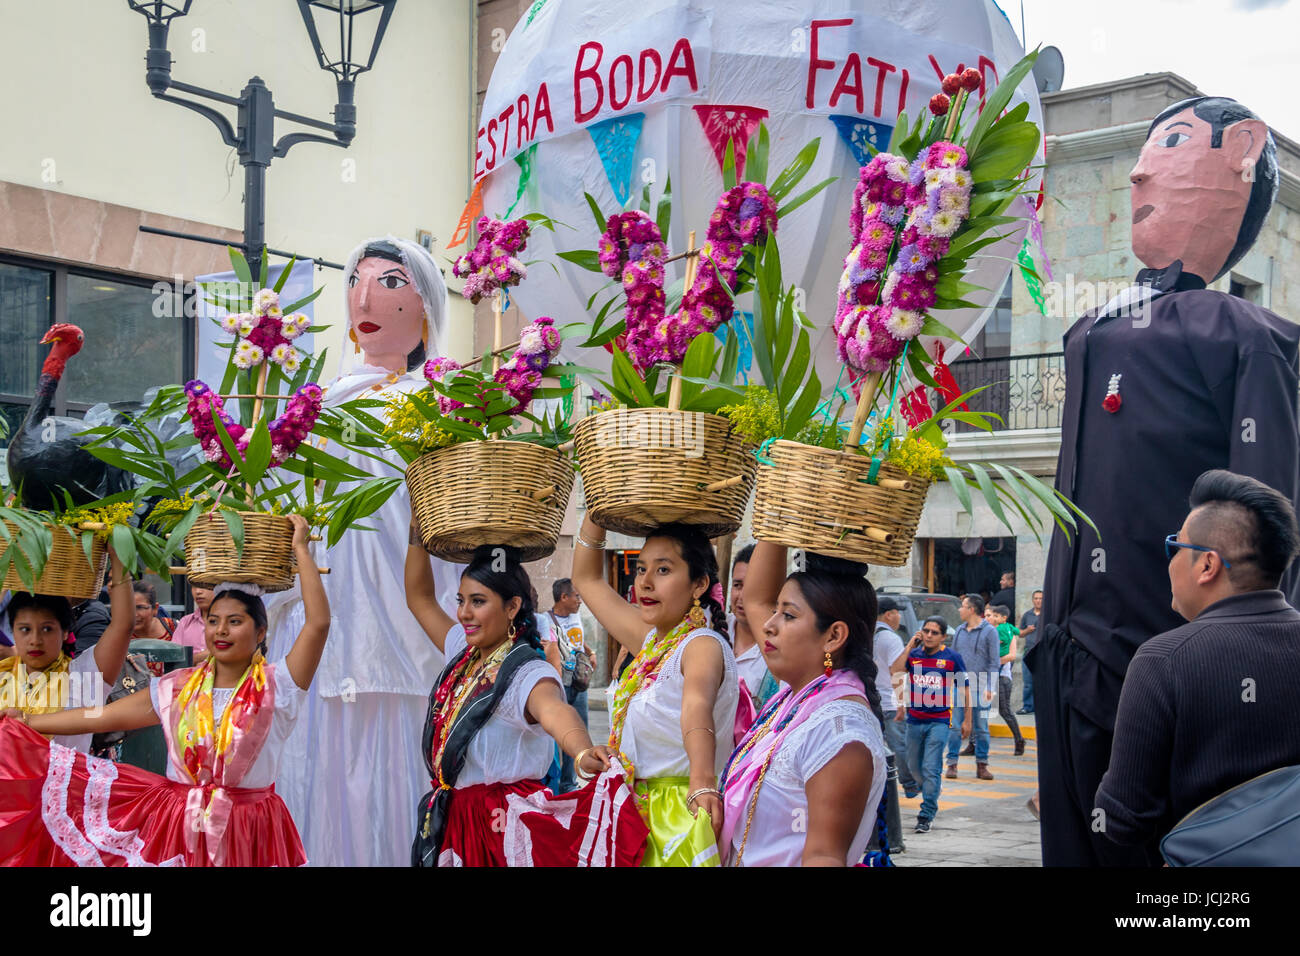 Typical Regional Mexican Wedding Parade know as Calenda de Bodas - Oaxaca, Mexico Stock Photo